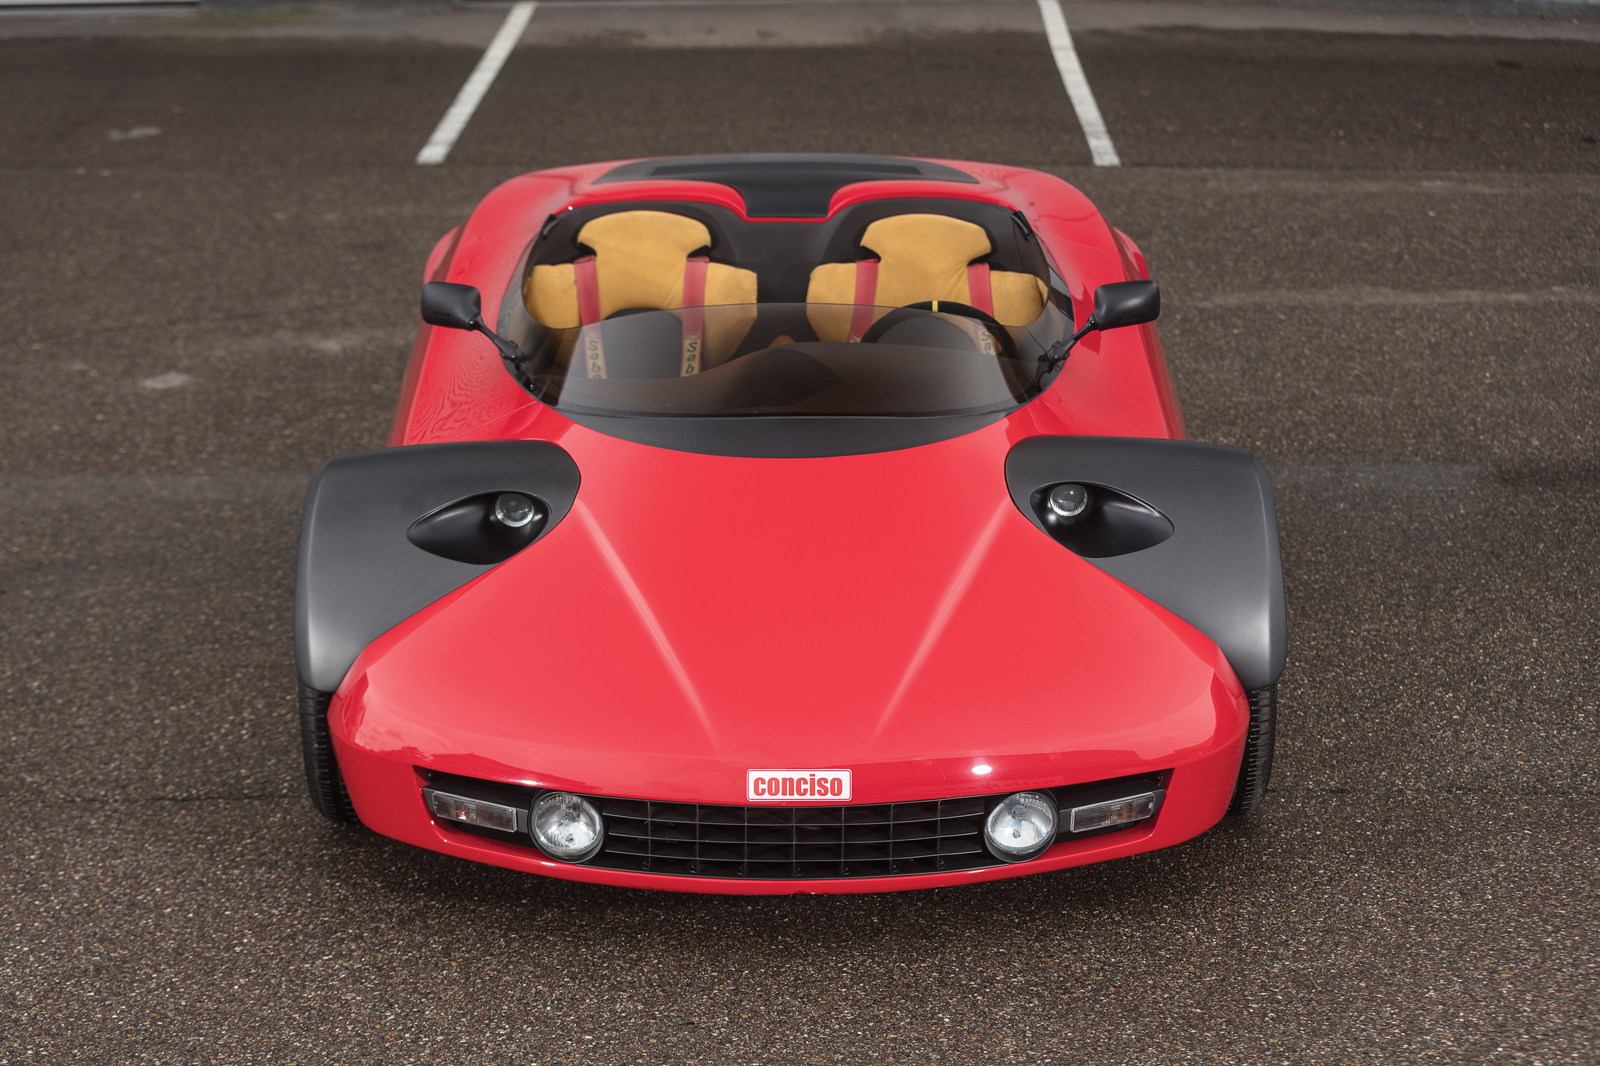 Ferrari 328 GTS Conciso